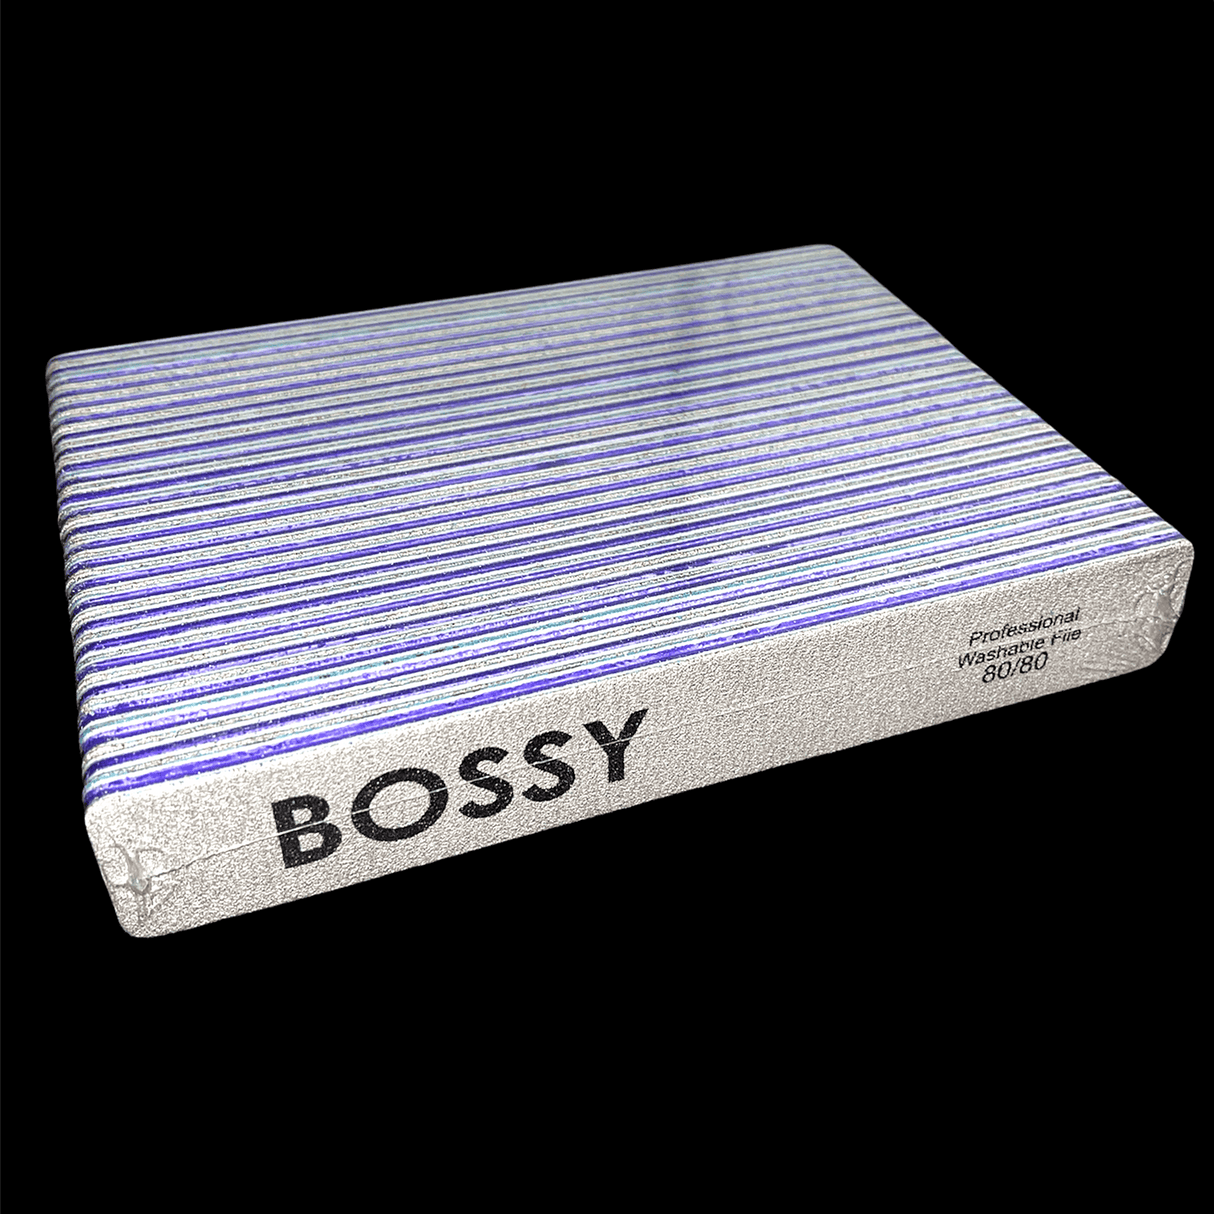 BOSSY Washable File Jumbo (Square) ZEBRA (80/80)